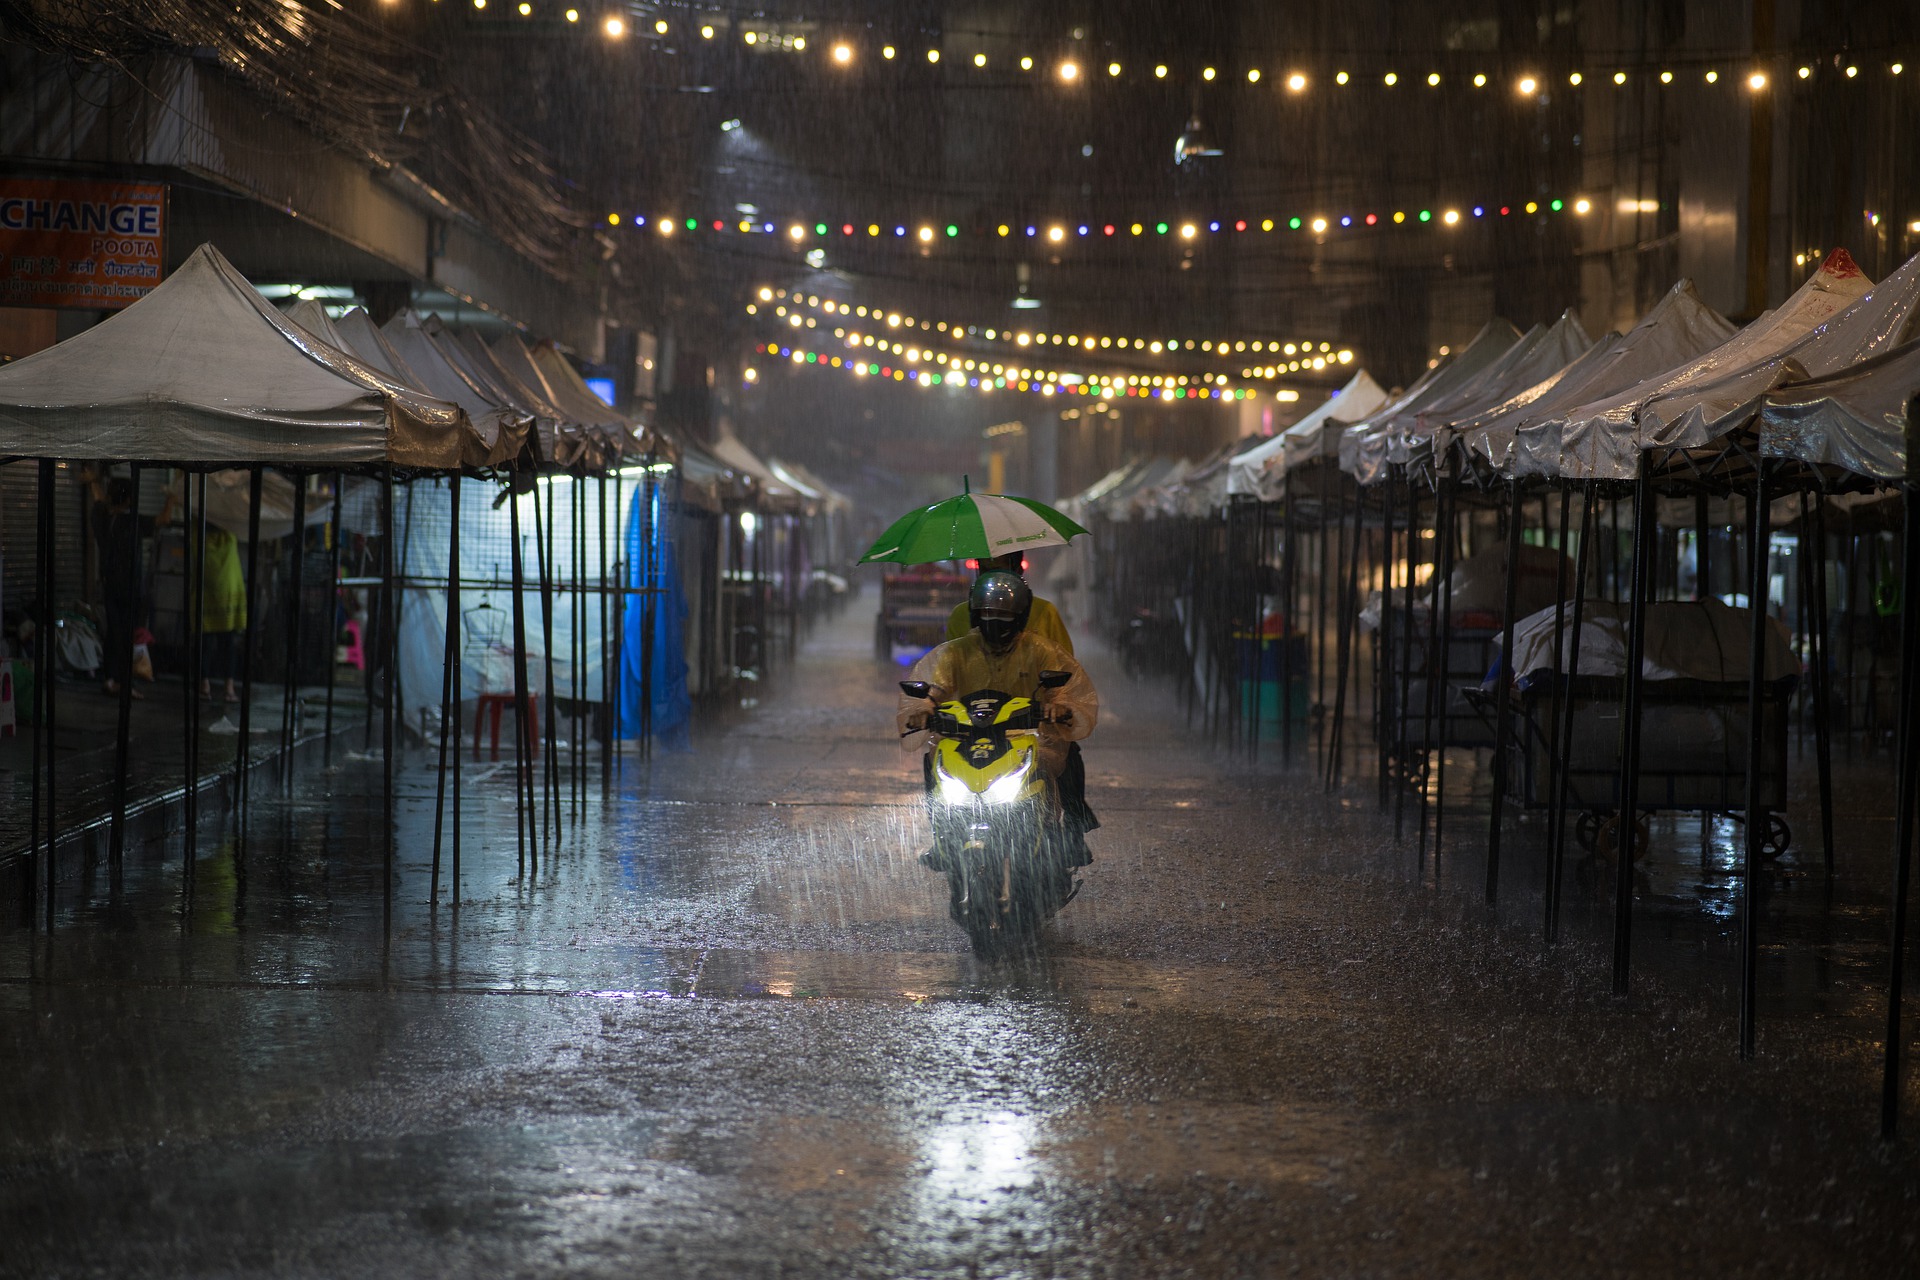 비가 내리는 태국 야시장의 야경